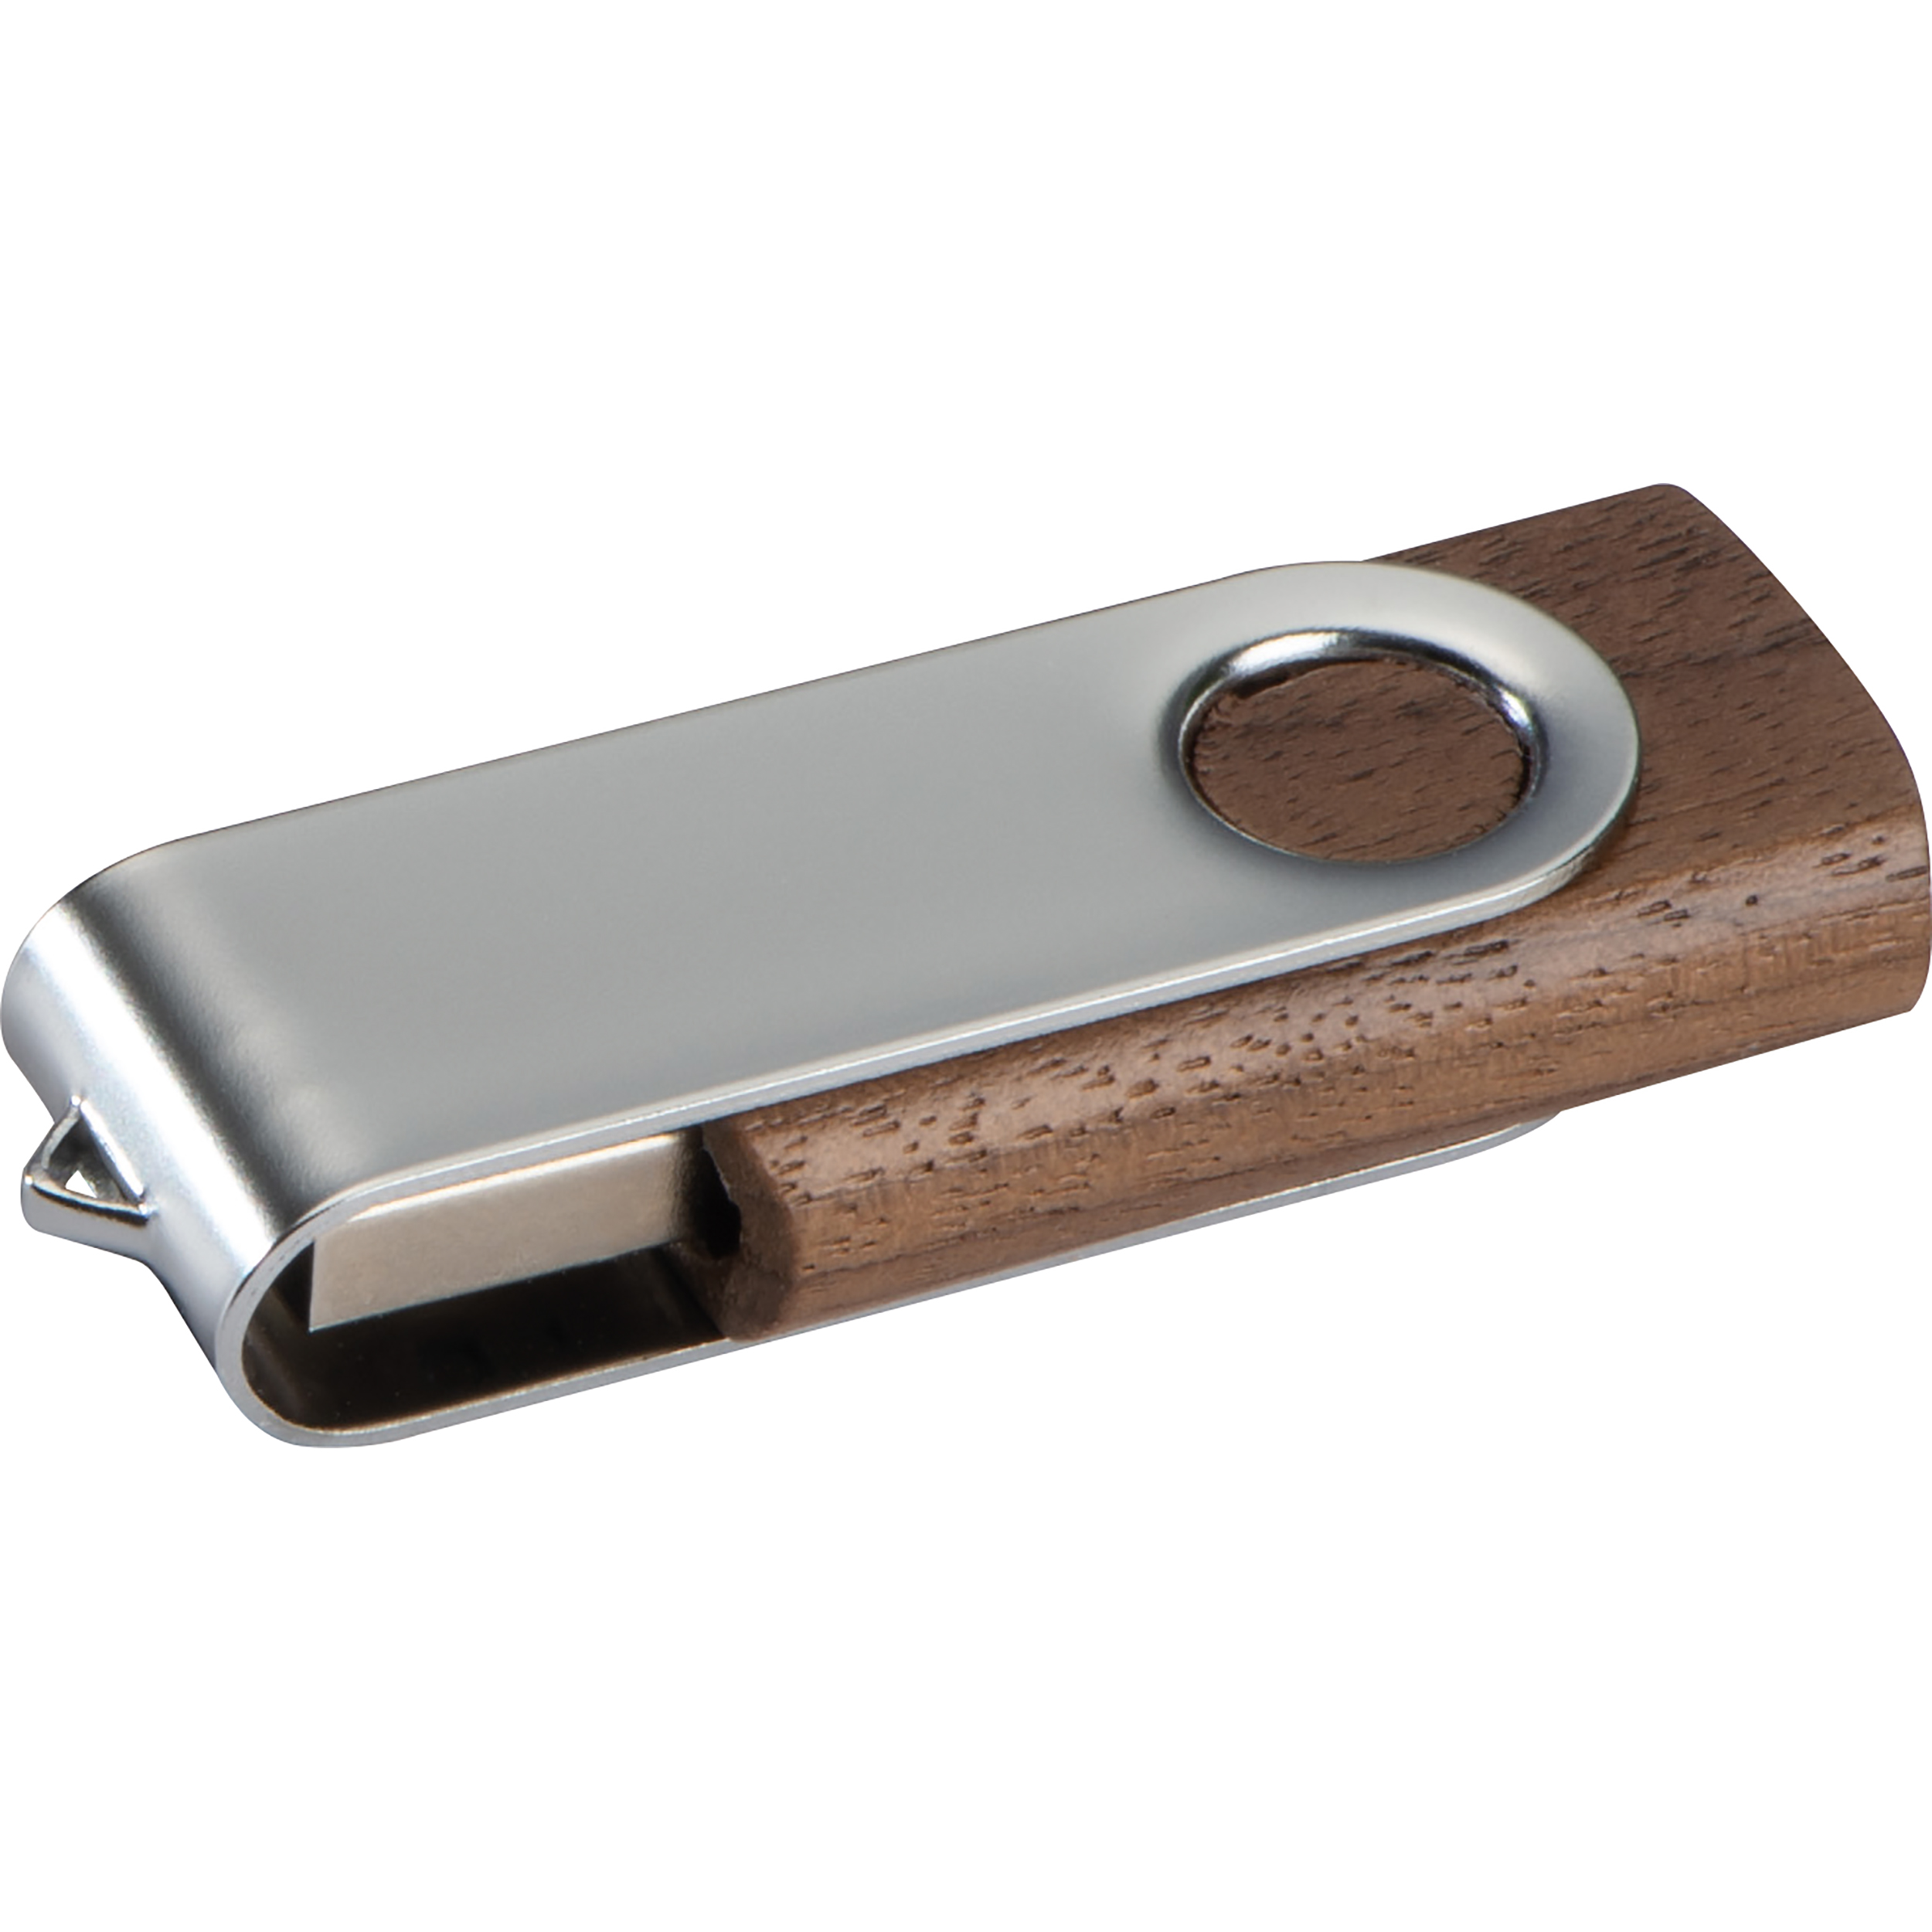 Chiavetta USB twist con cover in legno scuro - 8GB